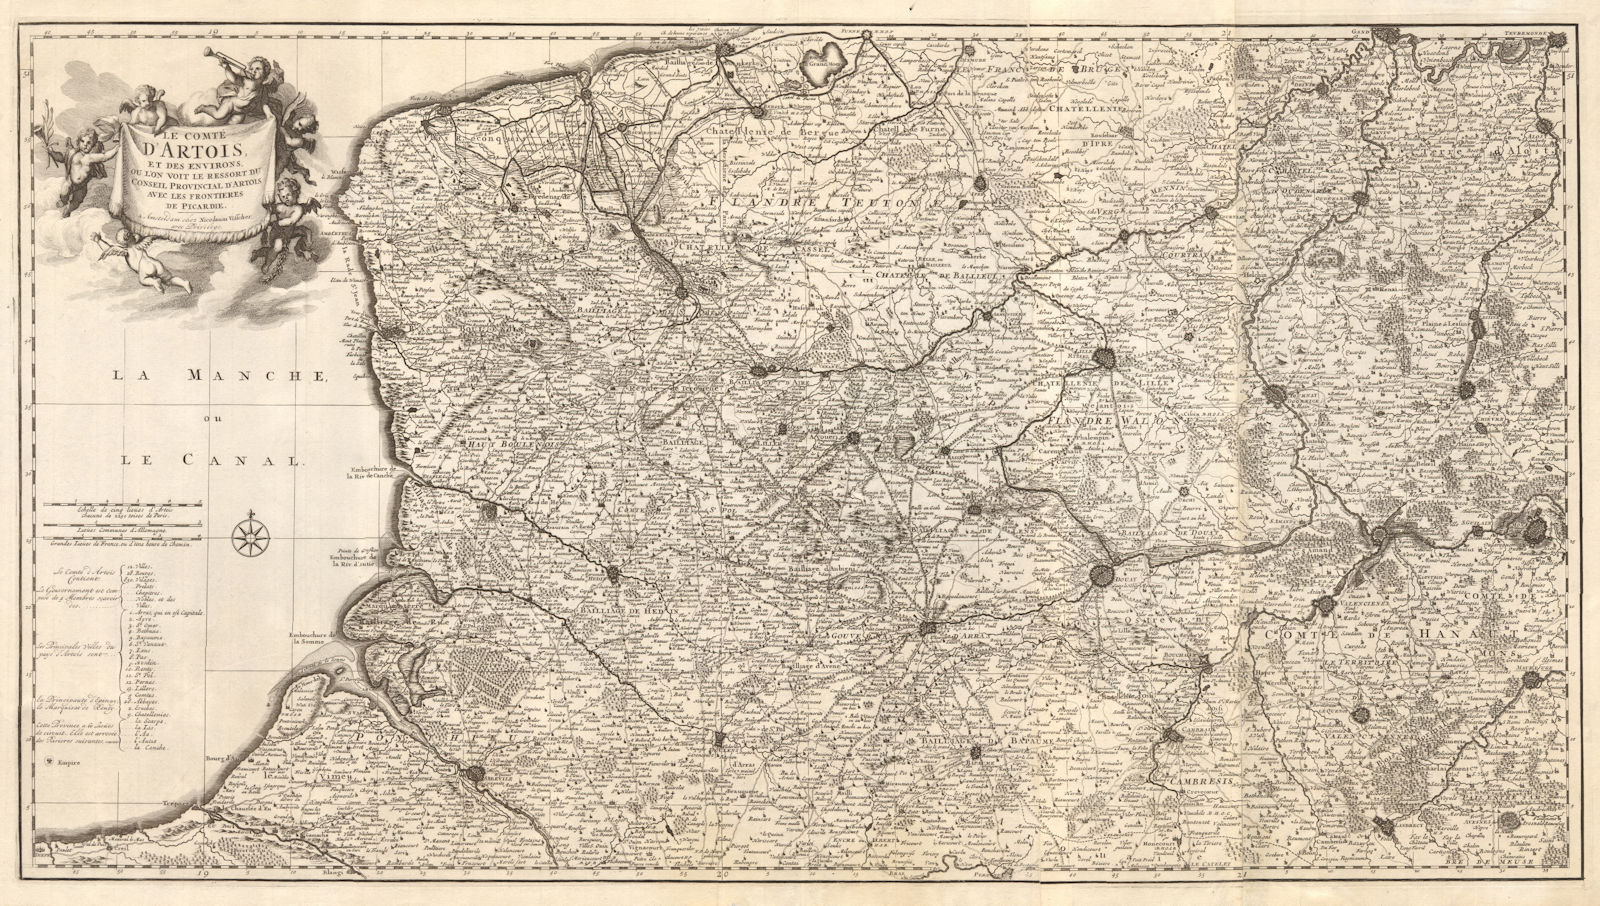 'Le Comté d'Artois et des environs'. N France & W Belgium. VISSCHER c1680 map